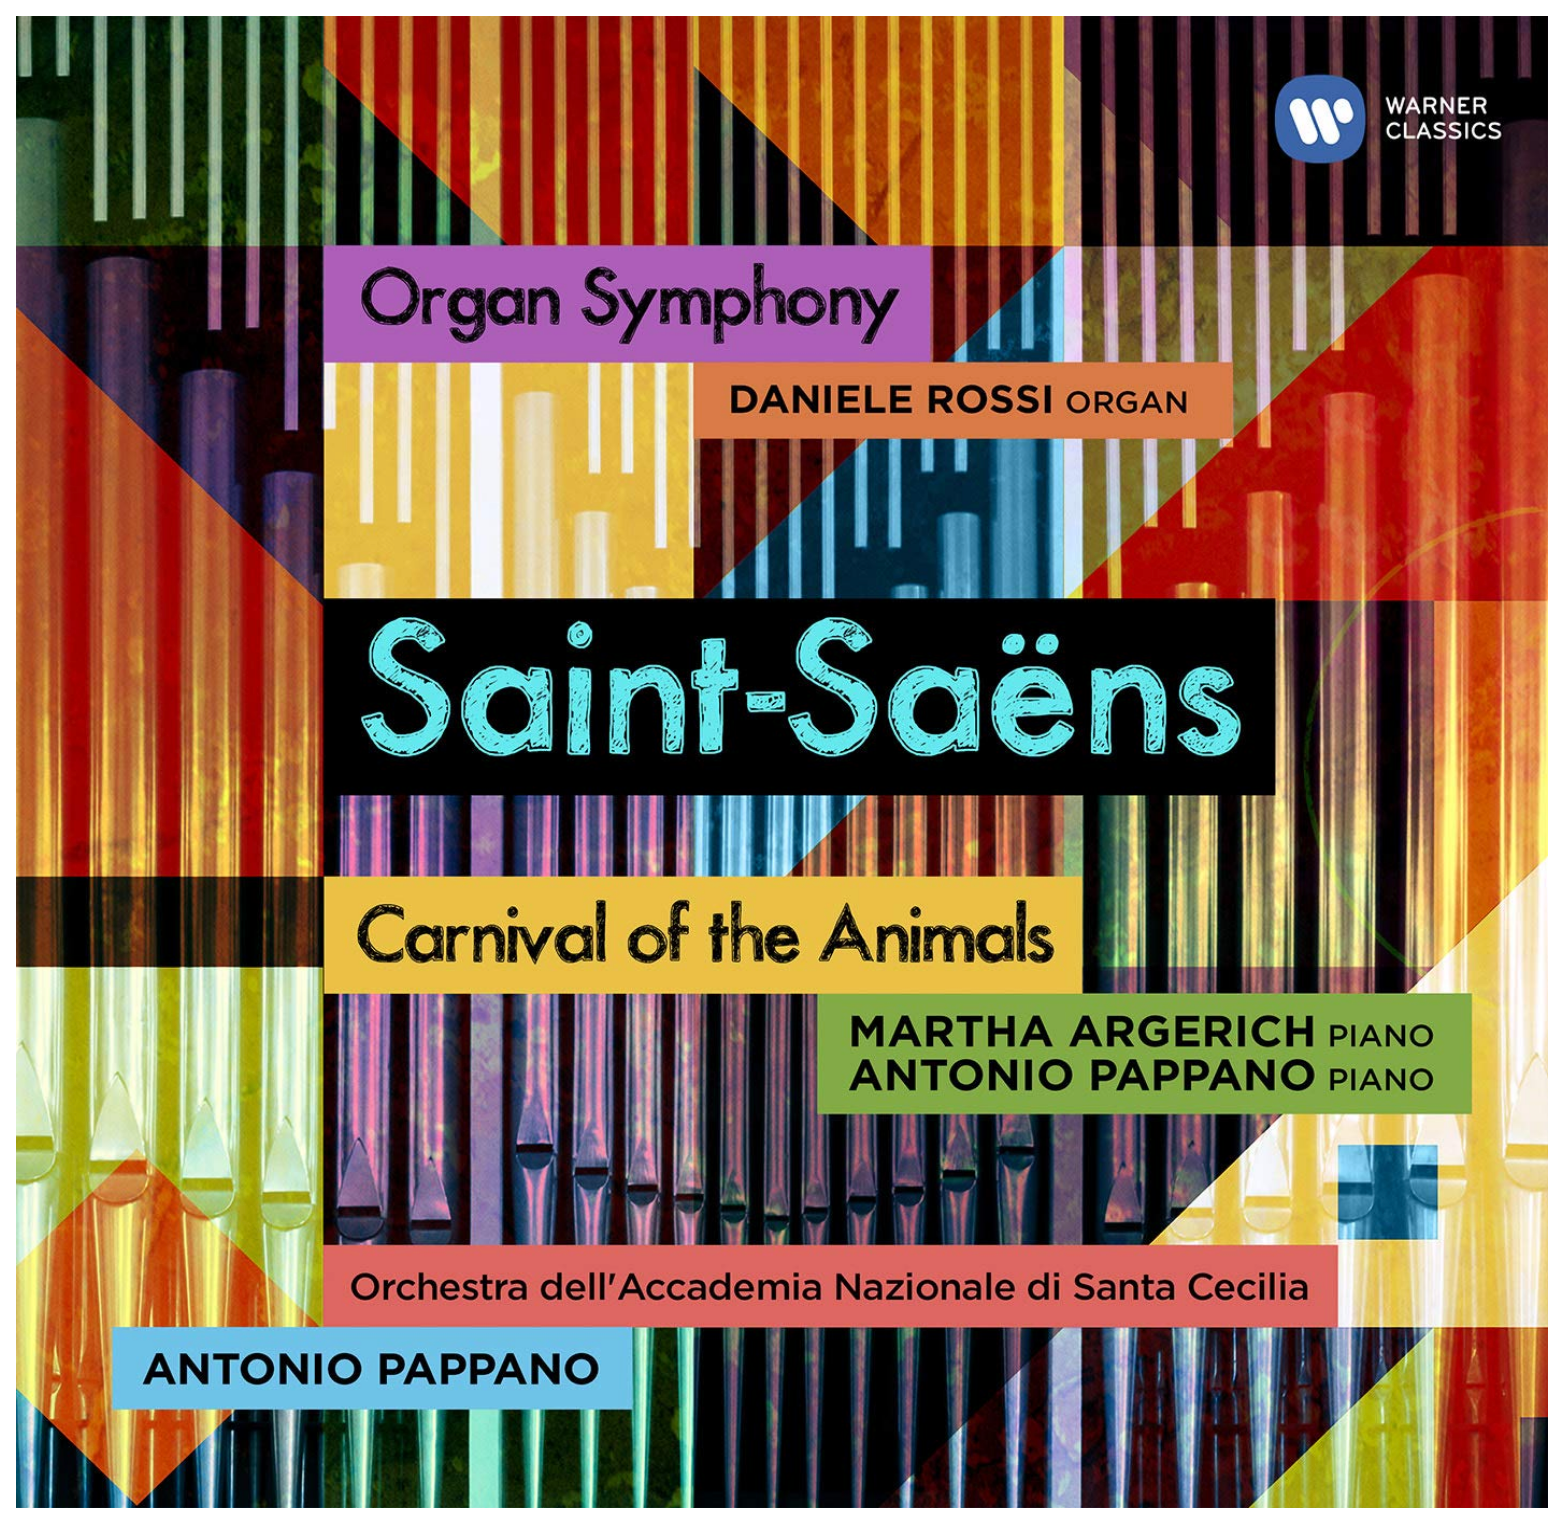 Orchestra dell’Accademia Nazionale di Santa Cecilia | Saint-Saëns: Organ Symphony and Carnival of the Animals